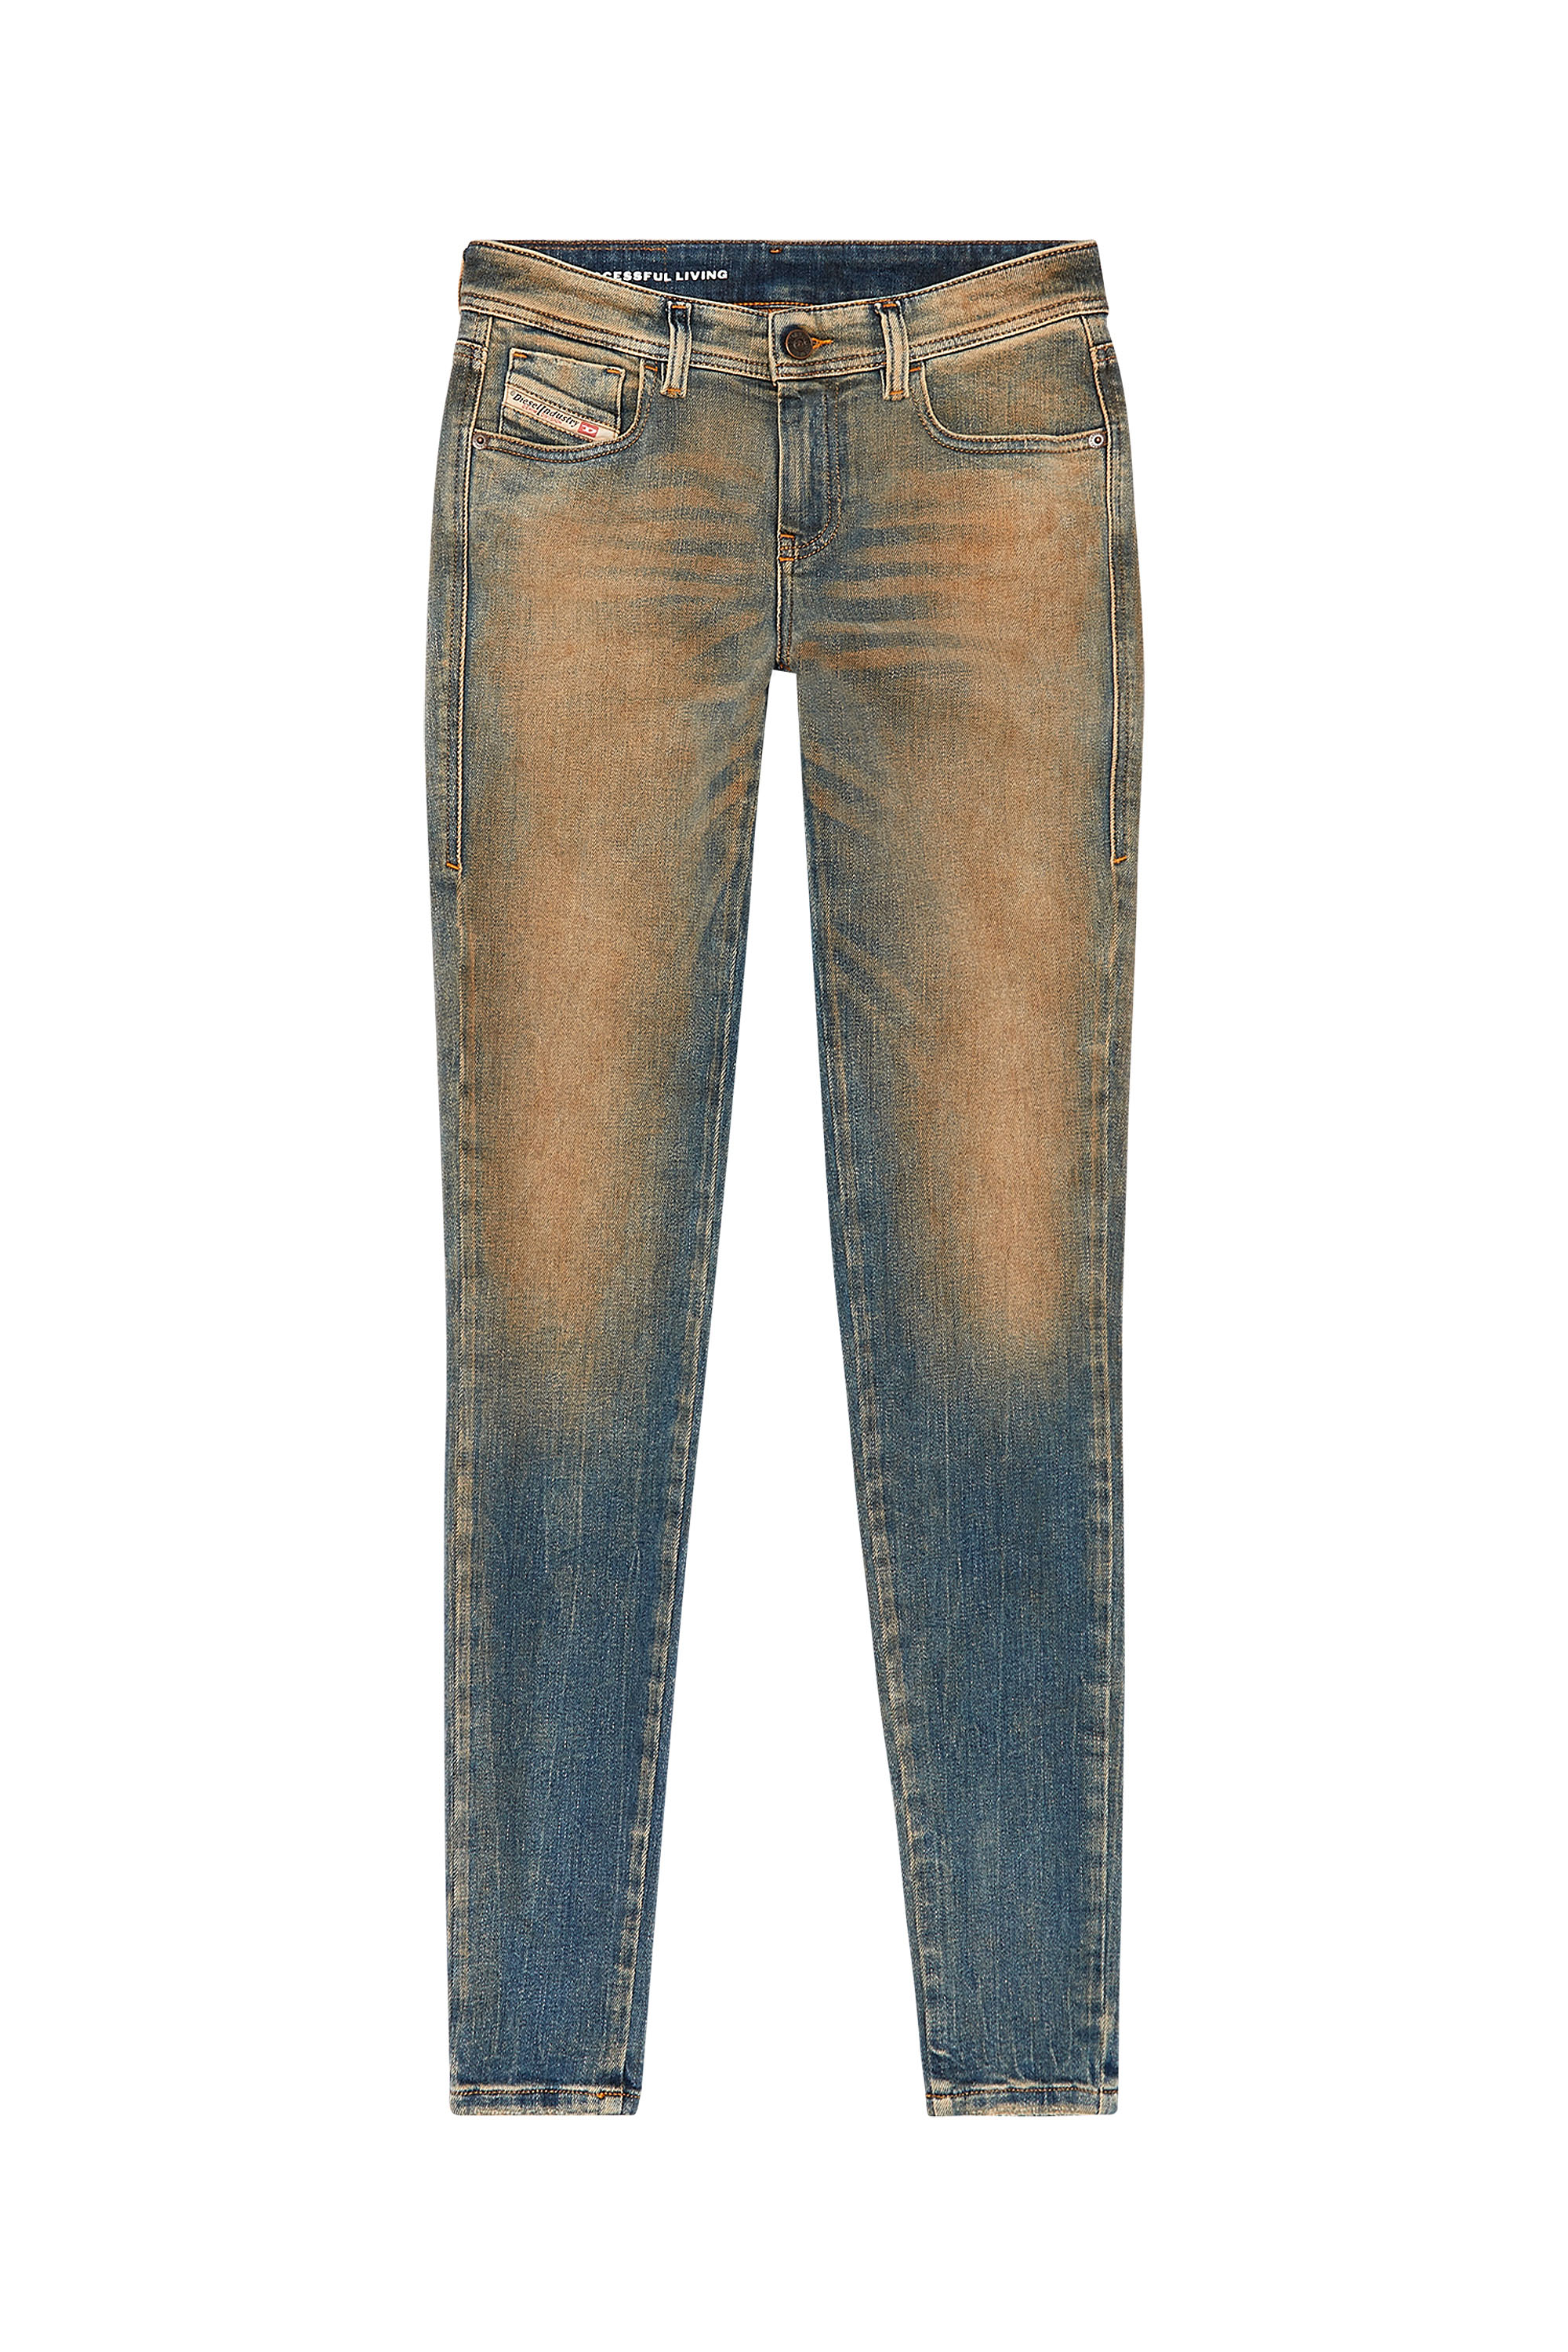 Diesel - Super skinny Jeans 2017 Slandy 09H83, Medium blue - Image 5